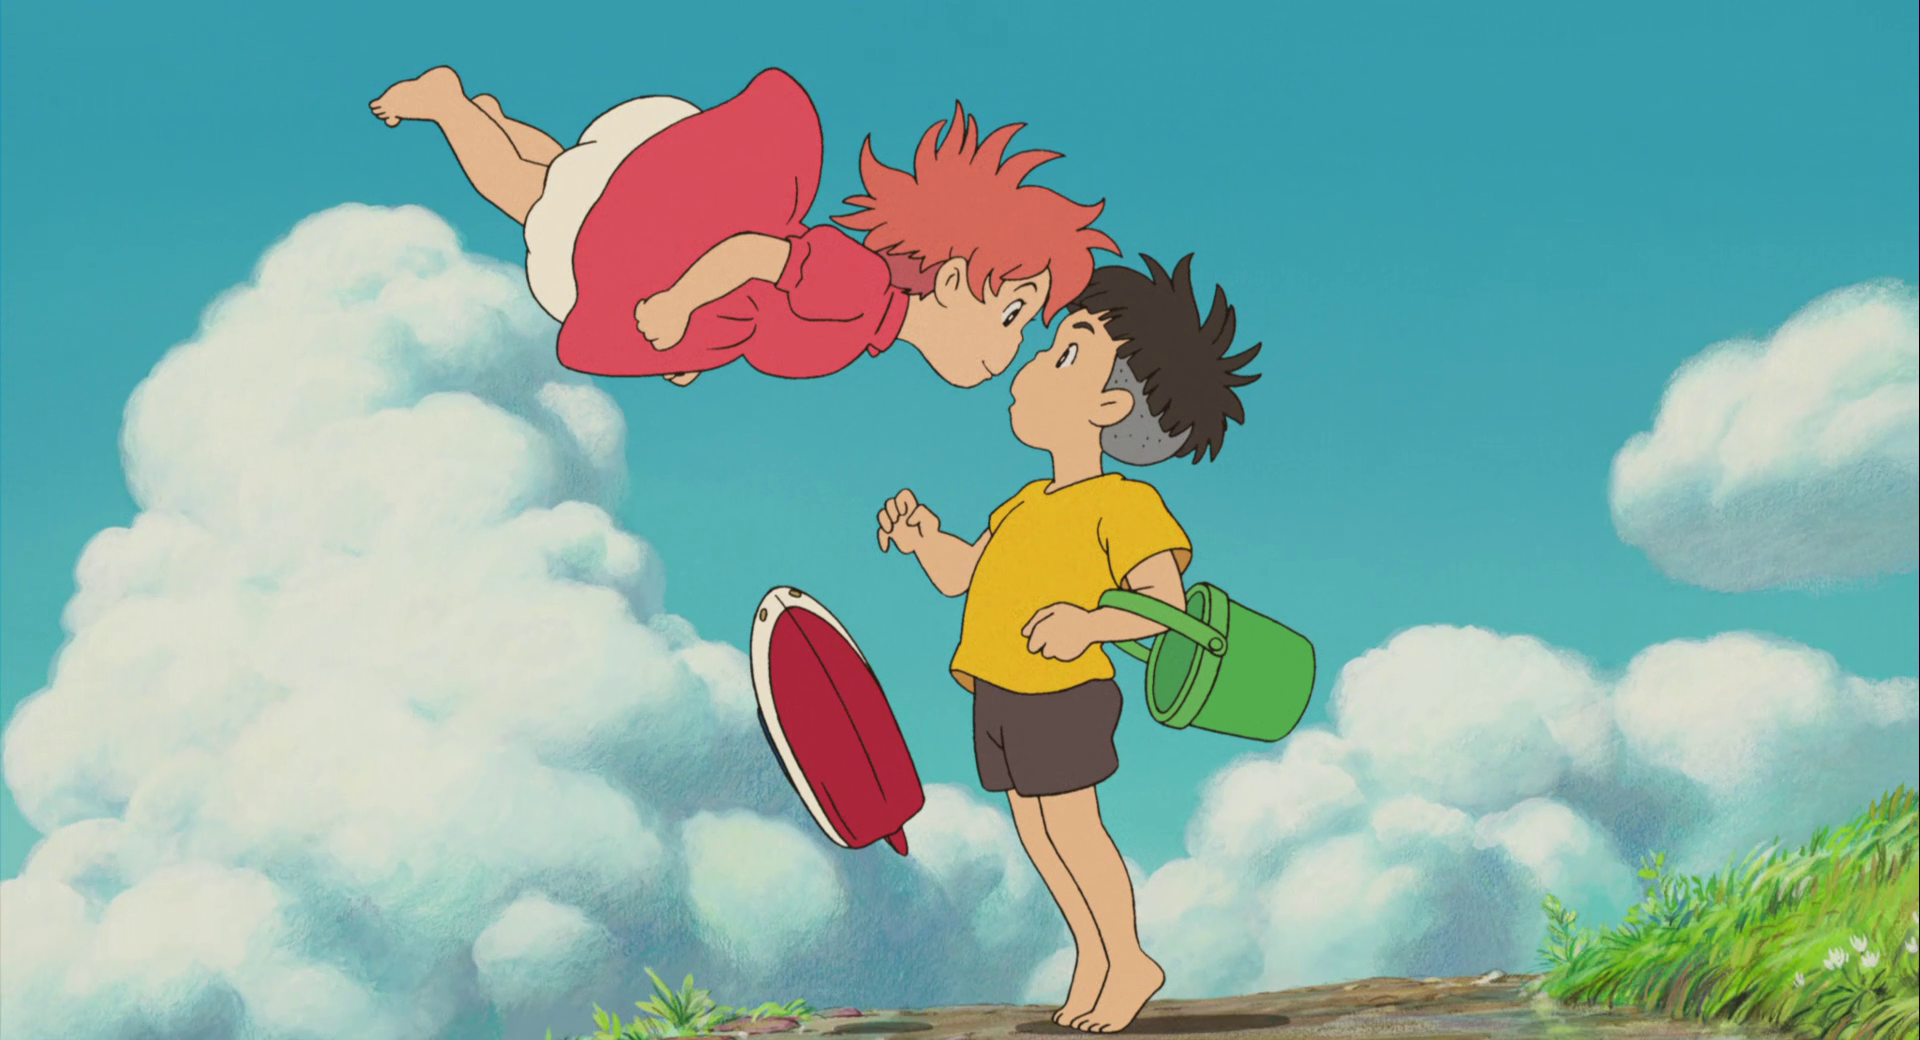 Ponyo - chú cá thần kỳ trong bộ phim hoạt hình Miyazaki - là một trong những nhân vật được yêu thích nhất của thế giới hoạt hình. Được tạo hình với màu sắc tươi sáng và tính cách đáng yêu, Ponyo đã tạo nên một cảm giác mới lạ cho khán giả trẻ. Bức ảnh liên quan đến Ponyo sẽ khiến bạn cảm thấy như đang nhìn thấy sự sống động và hạnh phúc.